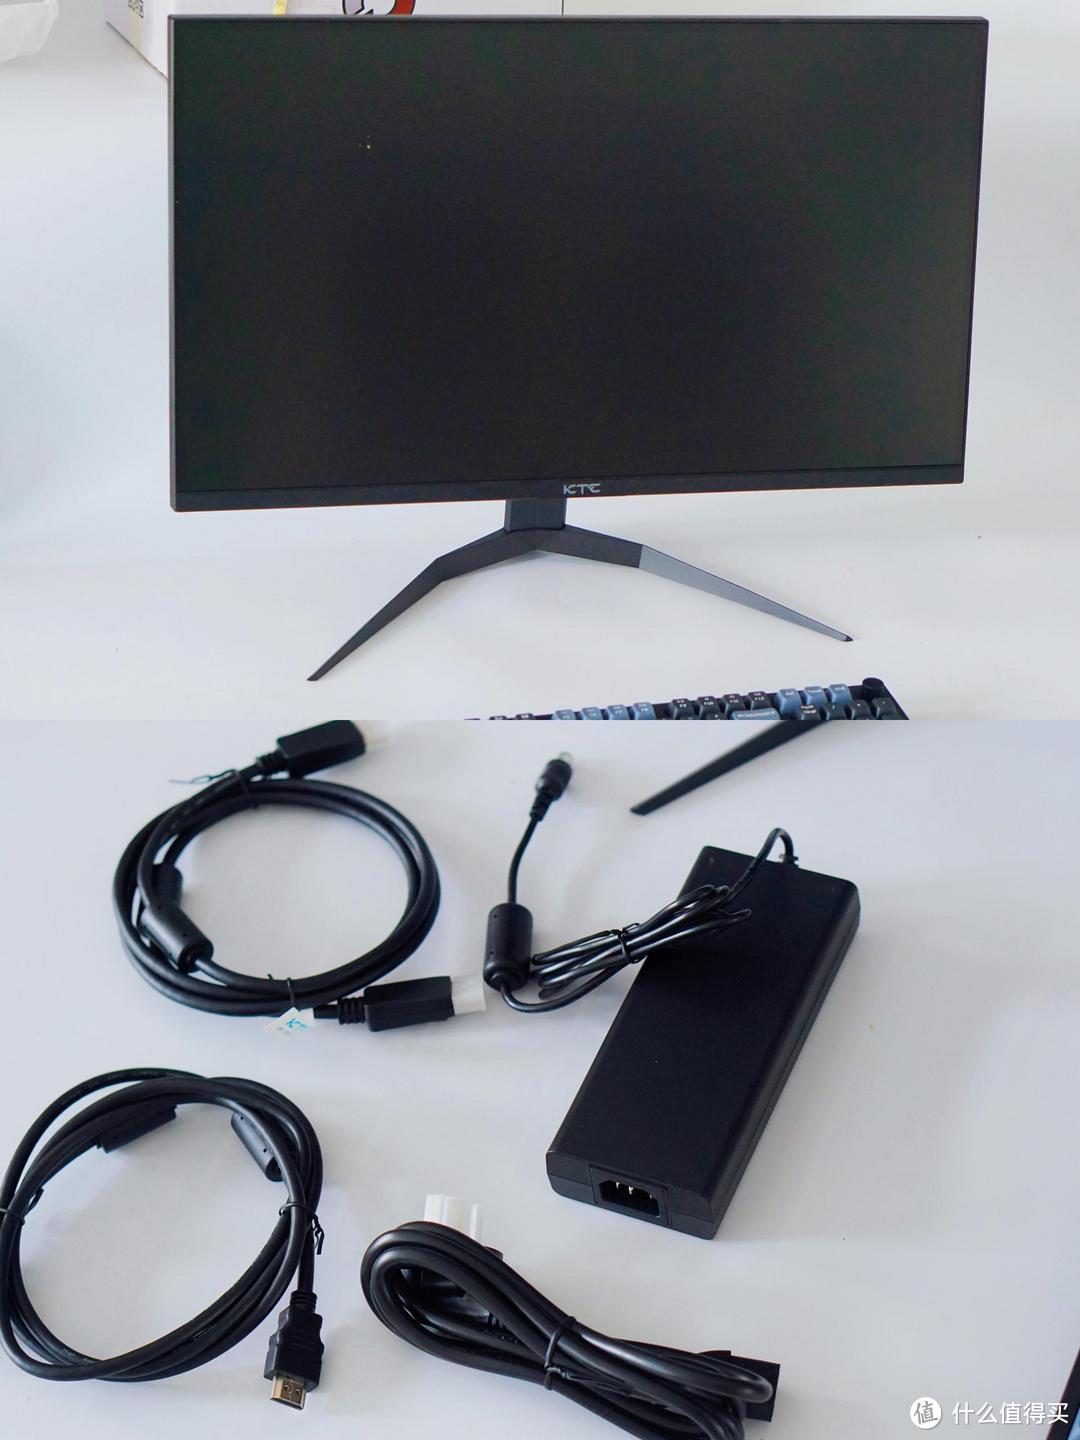 平价mini LED显示器的开创者KTC 2K165Hz MiniLED 显示屏